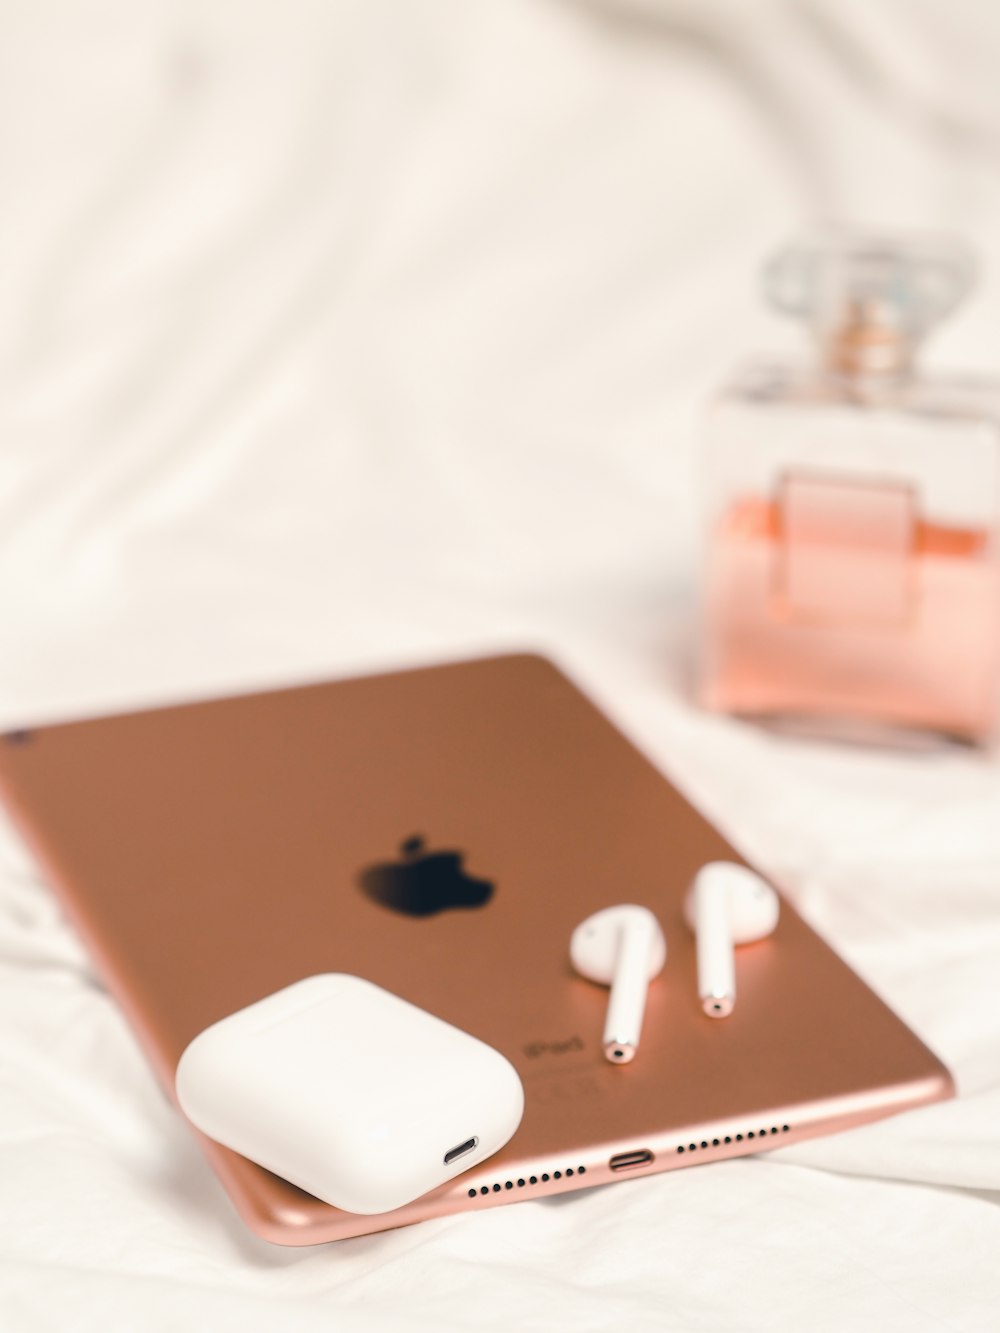 apple earpods on silver macbook